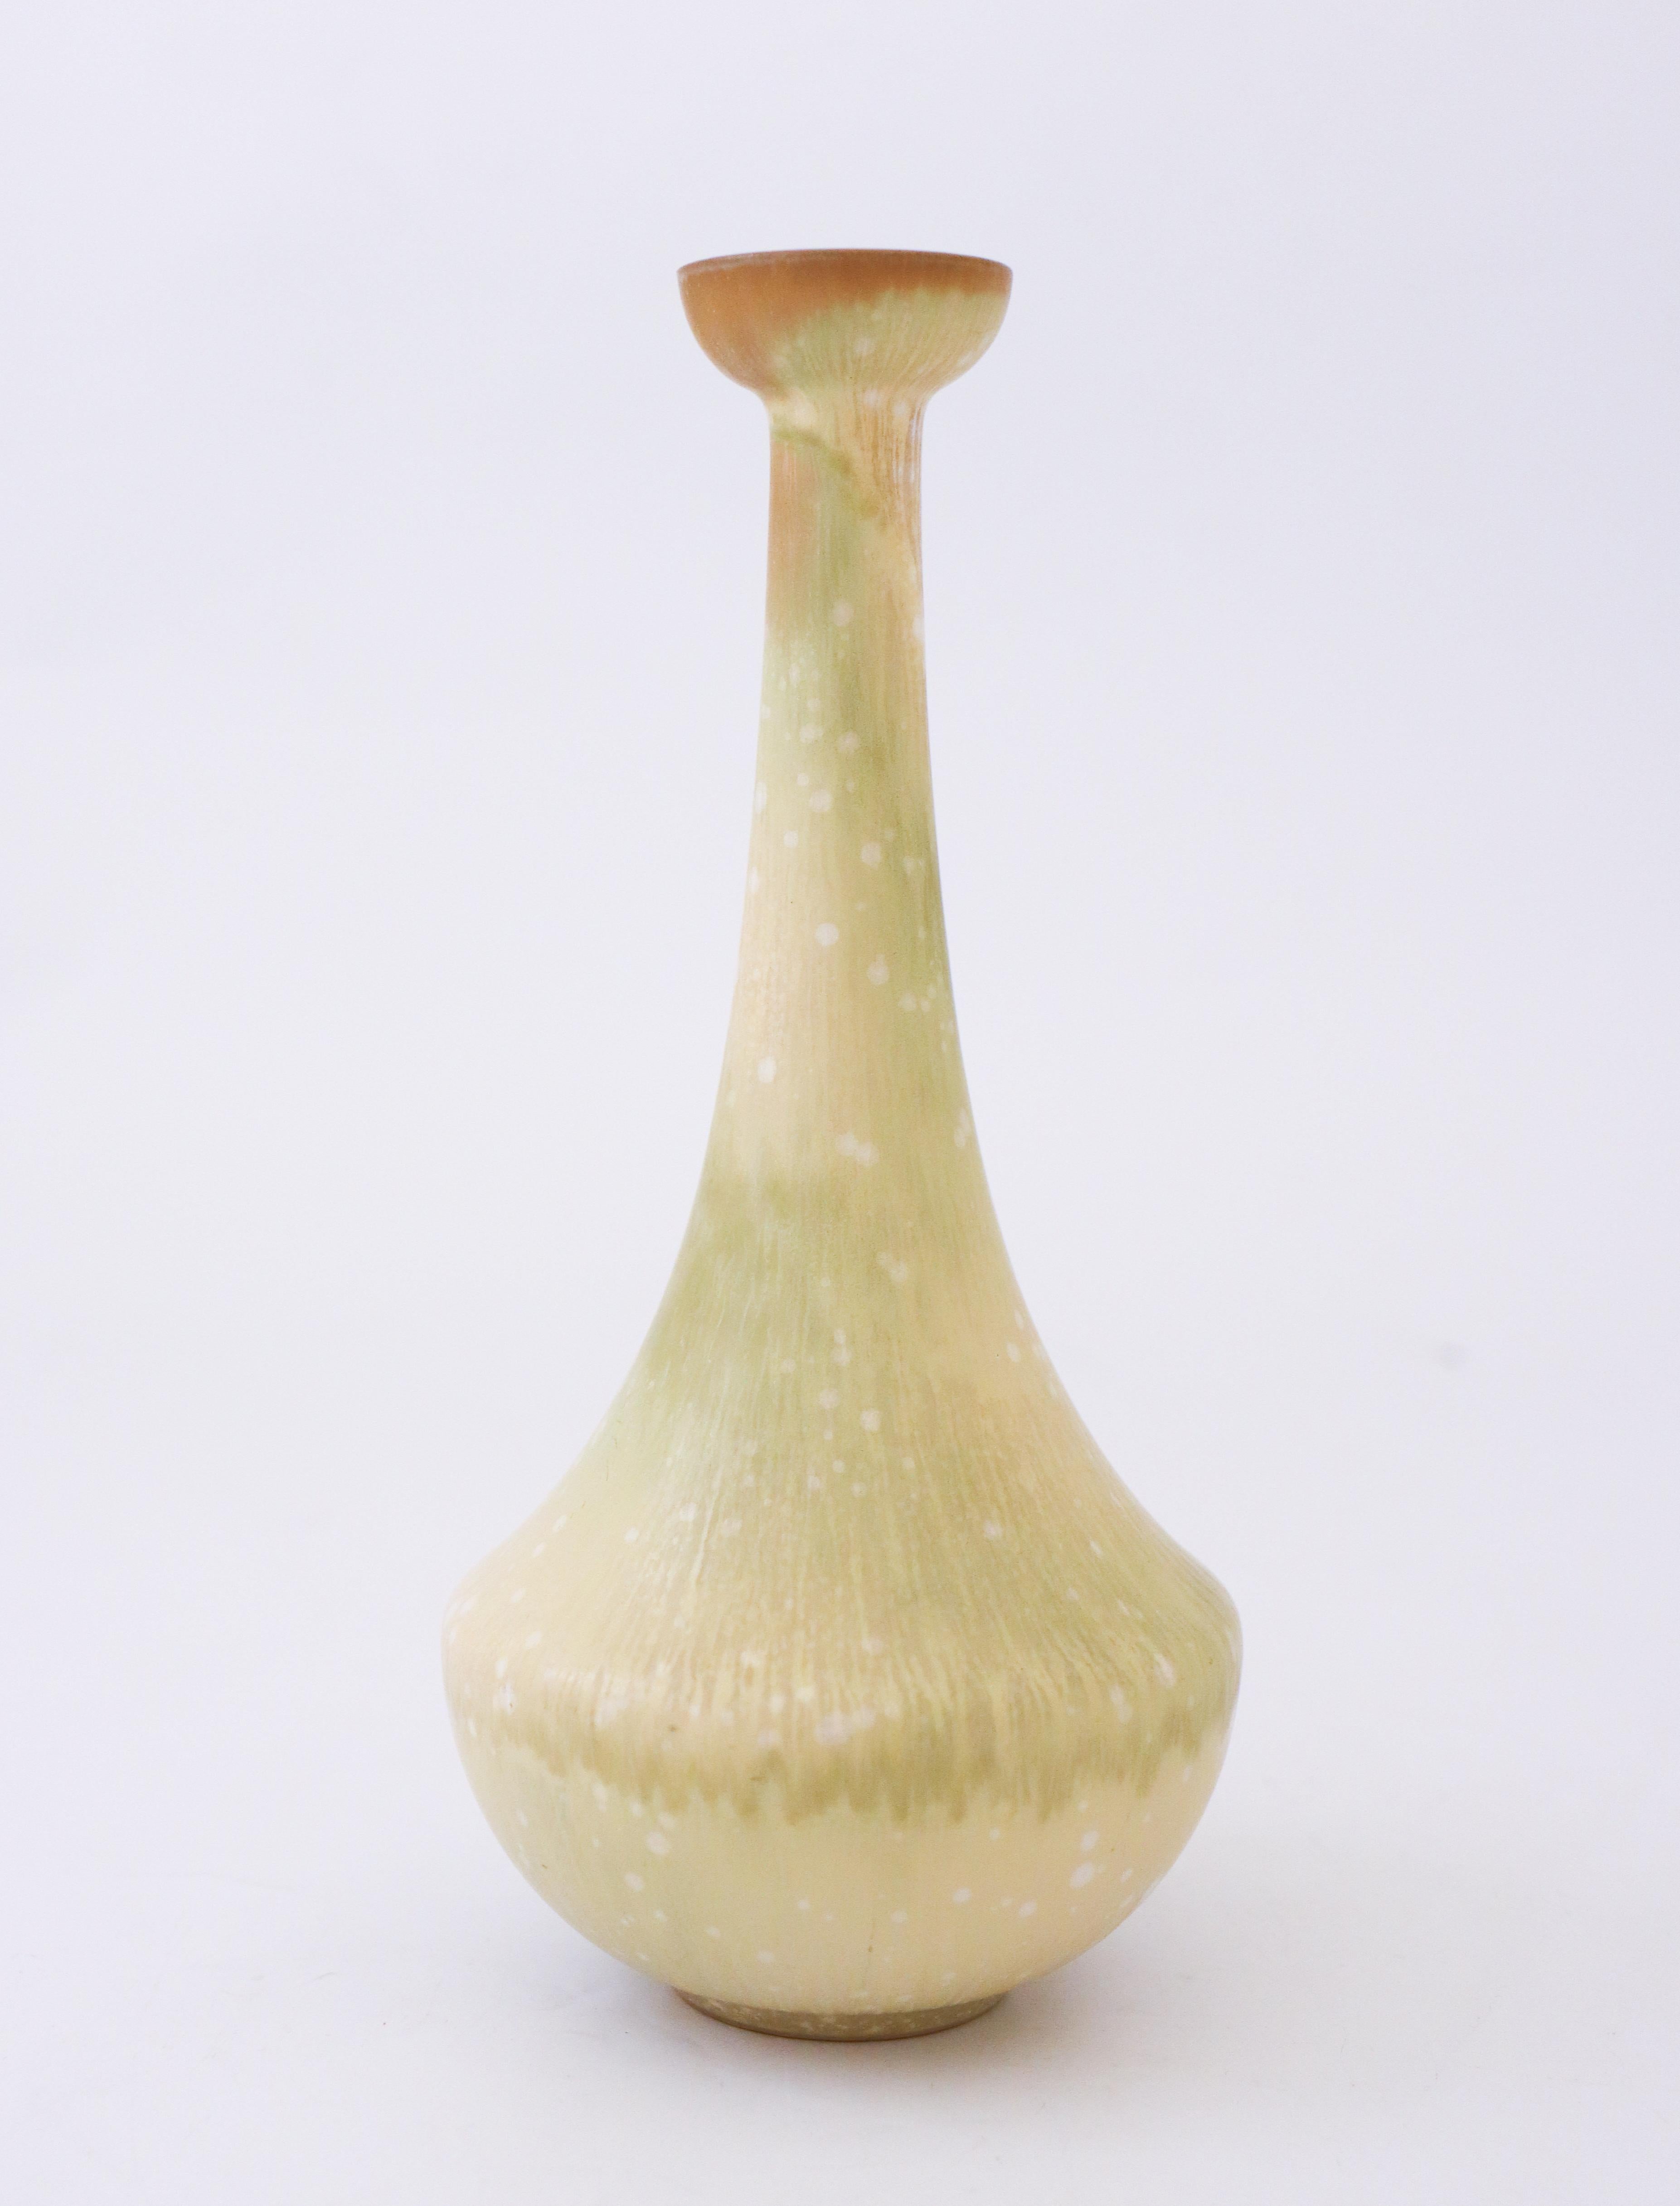 Eine schöne Vase mit grün-gelber Farbe, entworfen von Gunnar Nylund bei Rörstrand. Sie ist 19 cm hoch und in neuwertigem Zustand. Die Vase ist als 1. Qualität gekennzeichnet. 

 